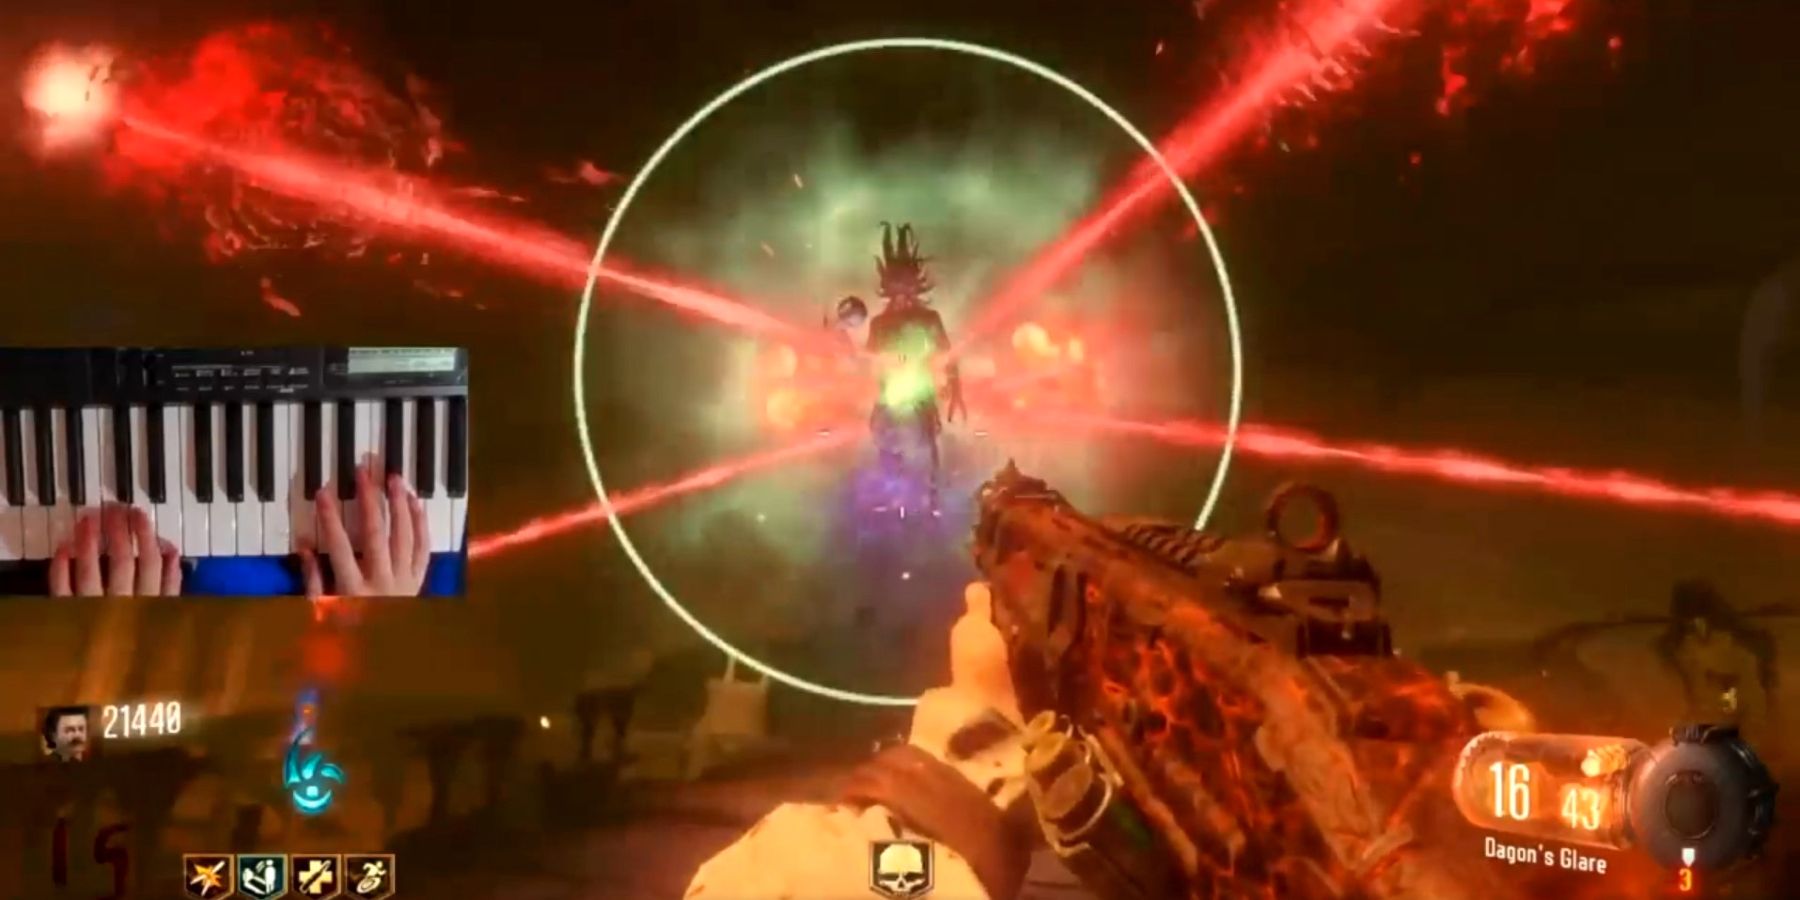 يكمل لاعب Call of Duty: Black Ops 3 لعبة Zombies Easter Egg باستخدام البيانو كمتحكم